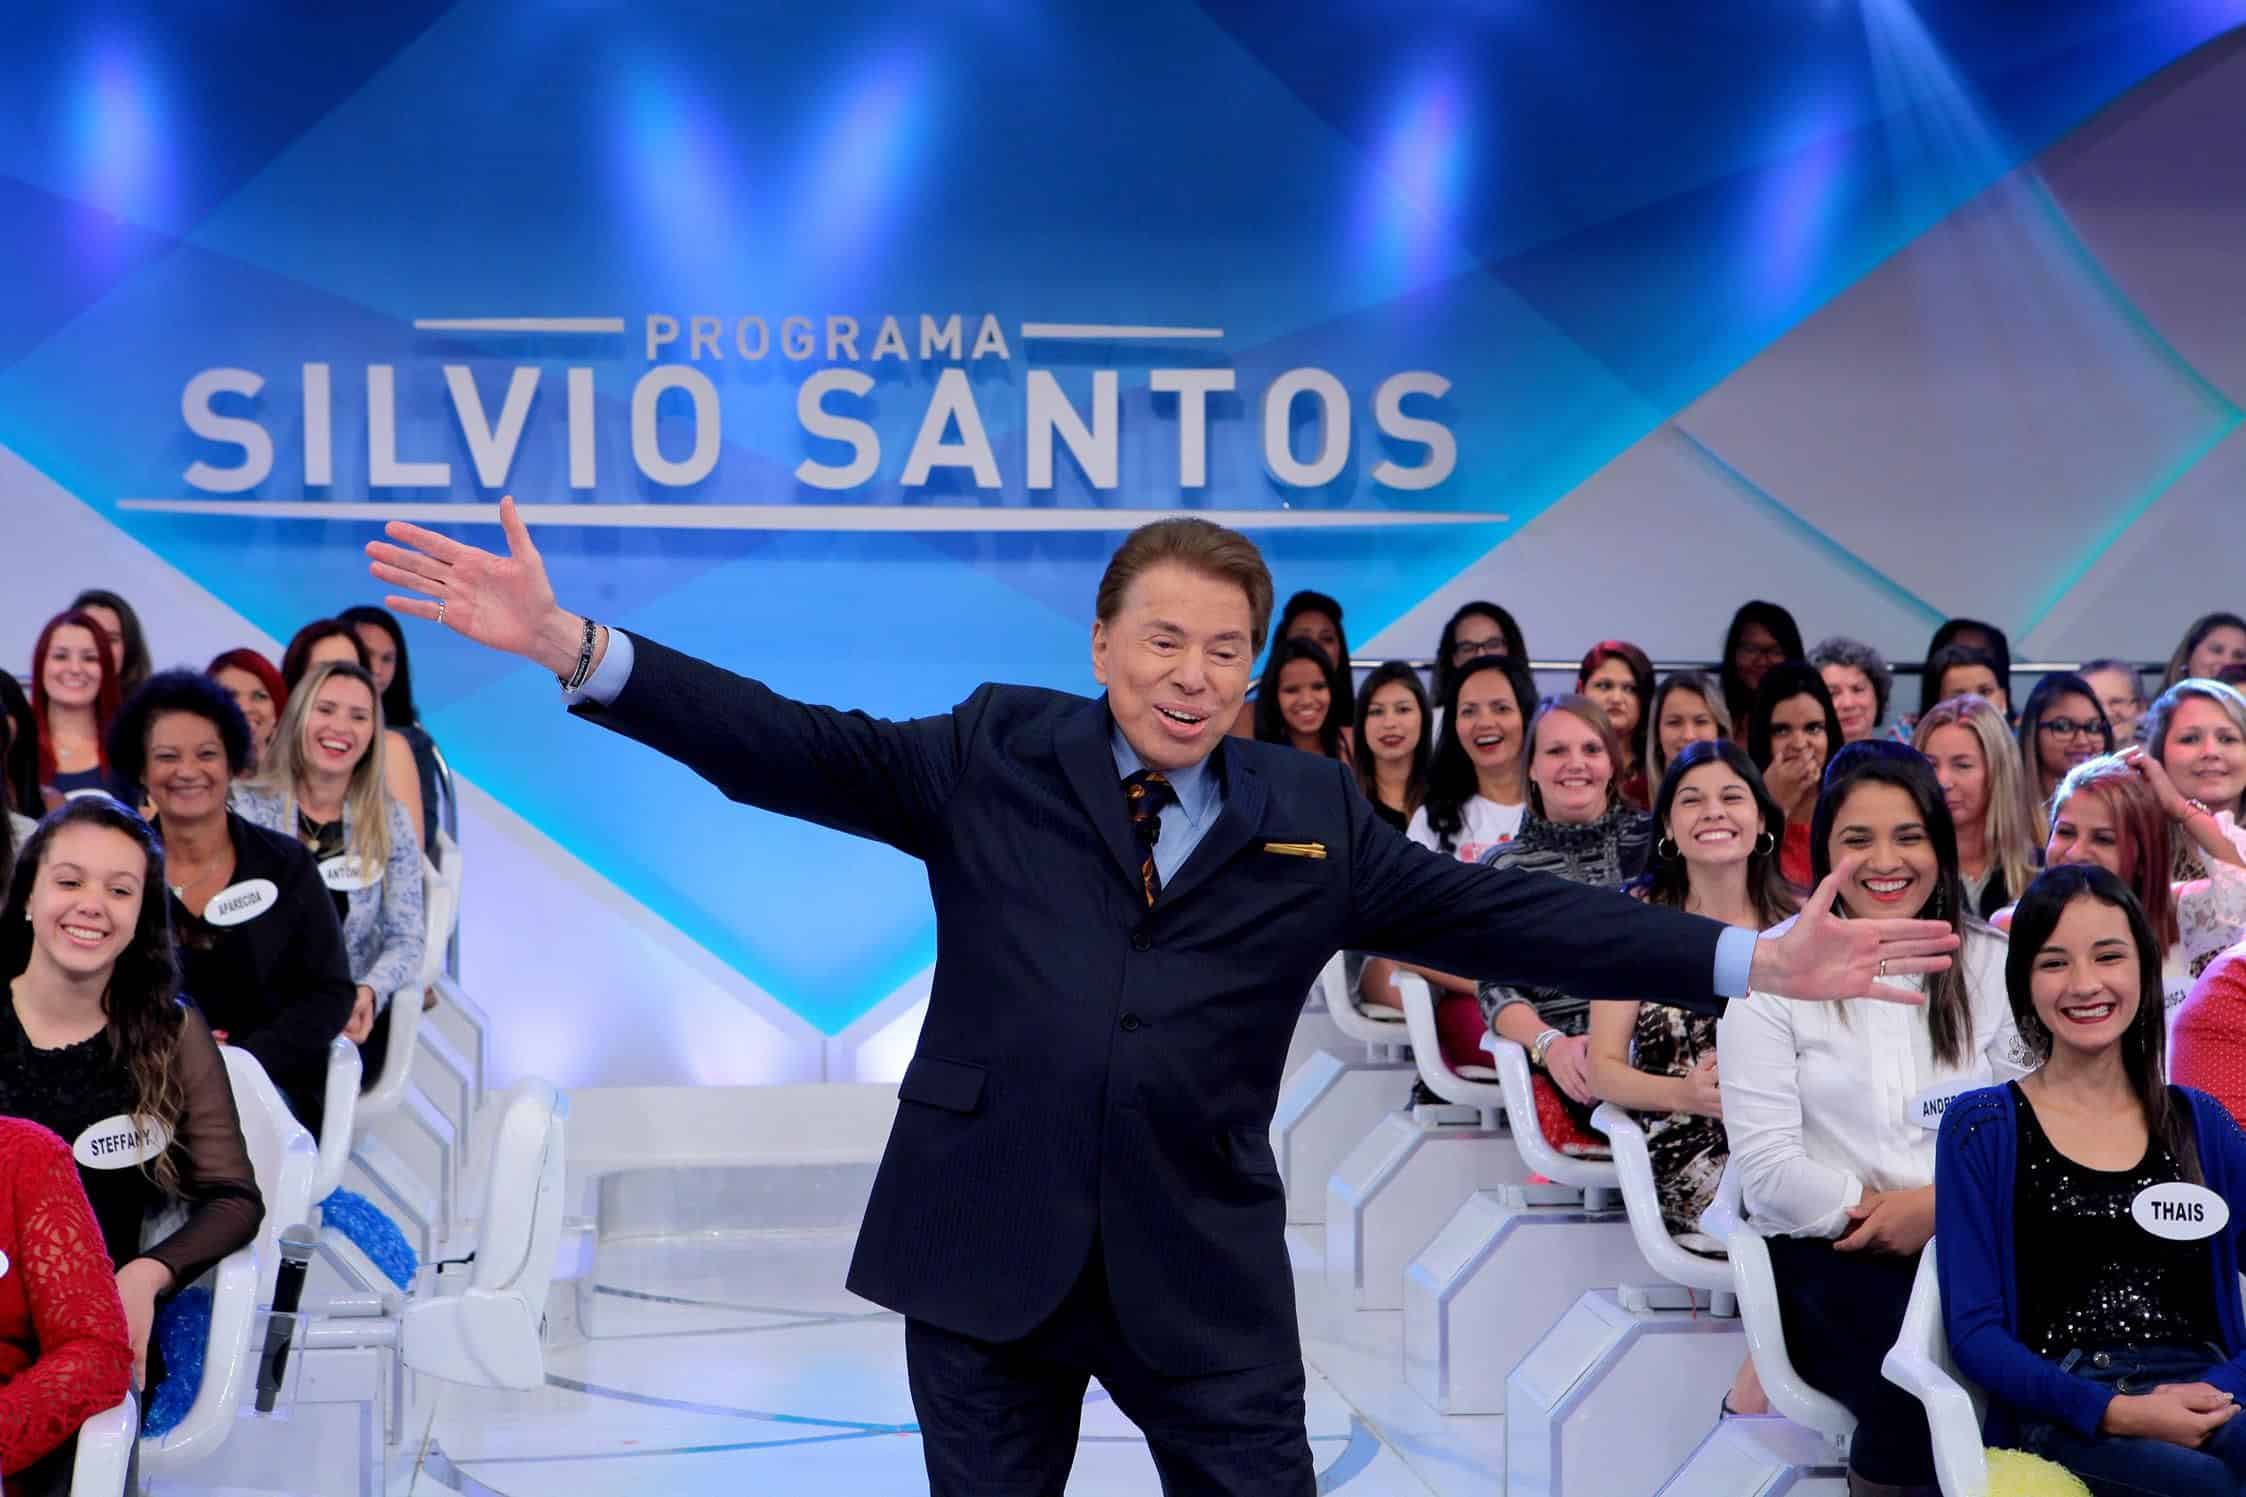 Silvio Santos defende José Mayer de acusação de assédio